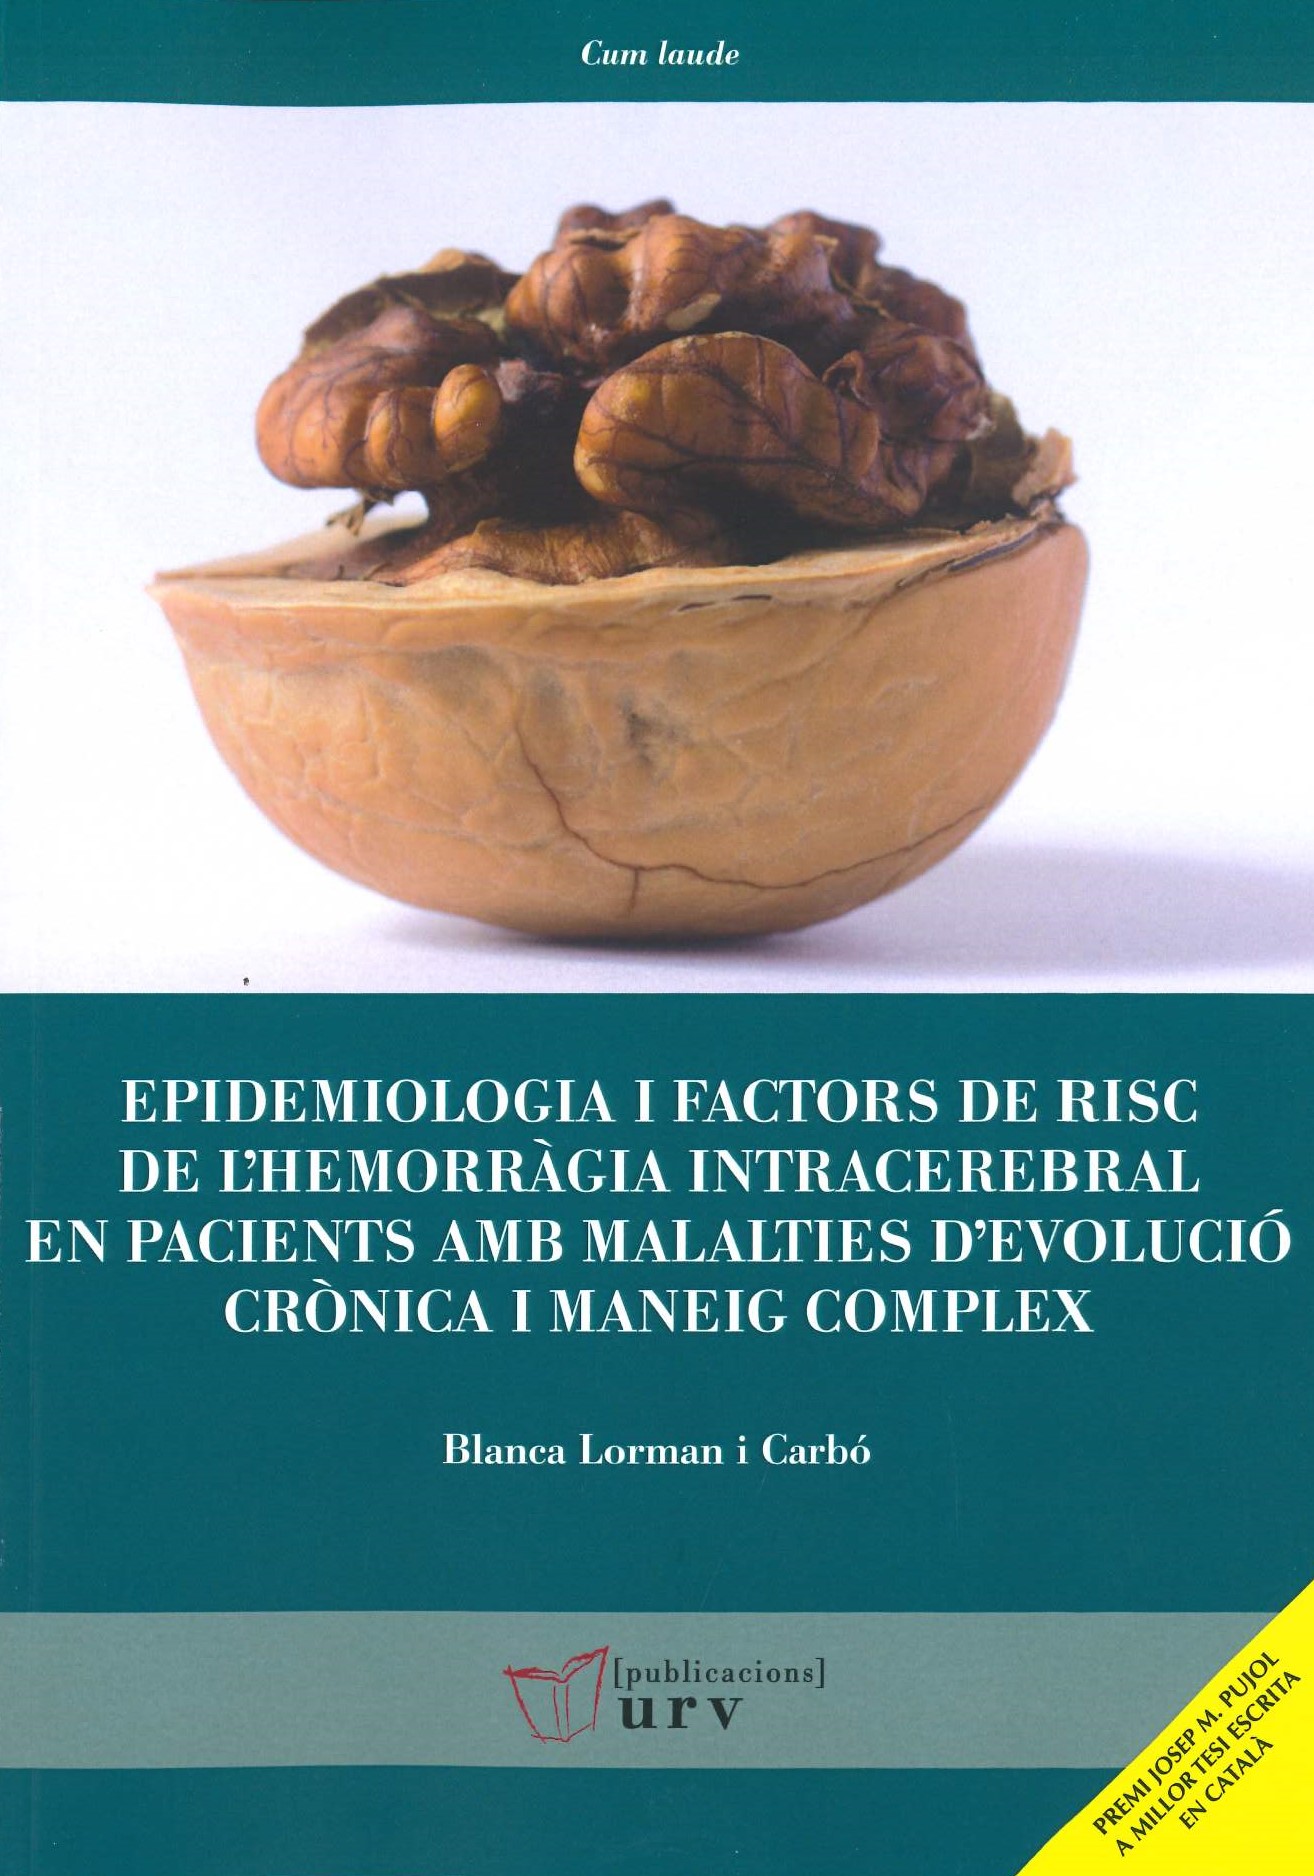 Imagen de portada del libro Epidemiologia i factors de risc de l'hemorràgia intracerebral en pacients amb malalties d'evolució crònica i maneig complex